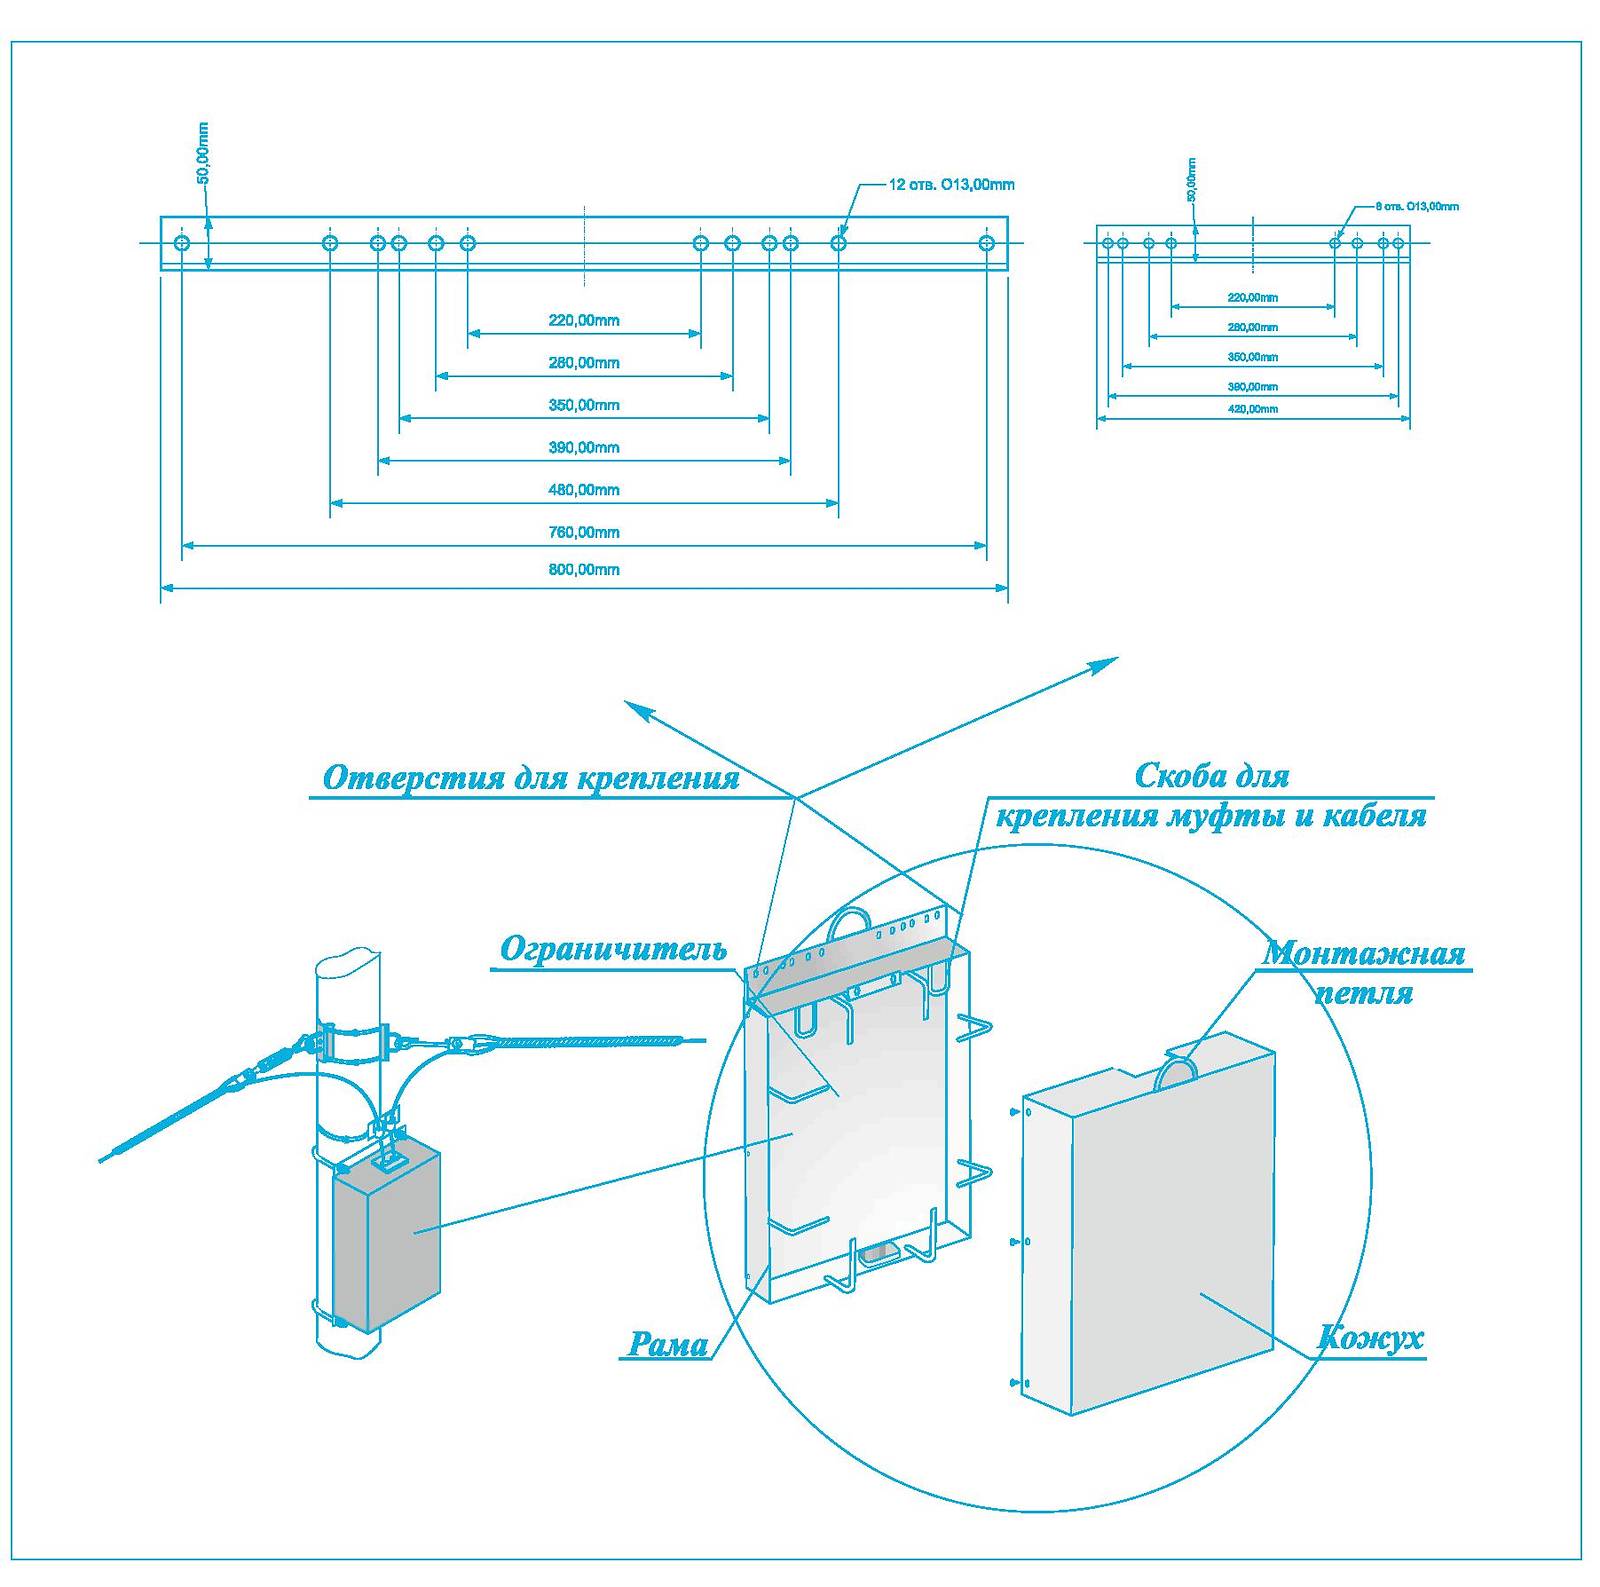 Шкаф типа ШРМ для размещения муфт и запасов оптического кабеля